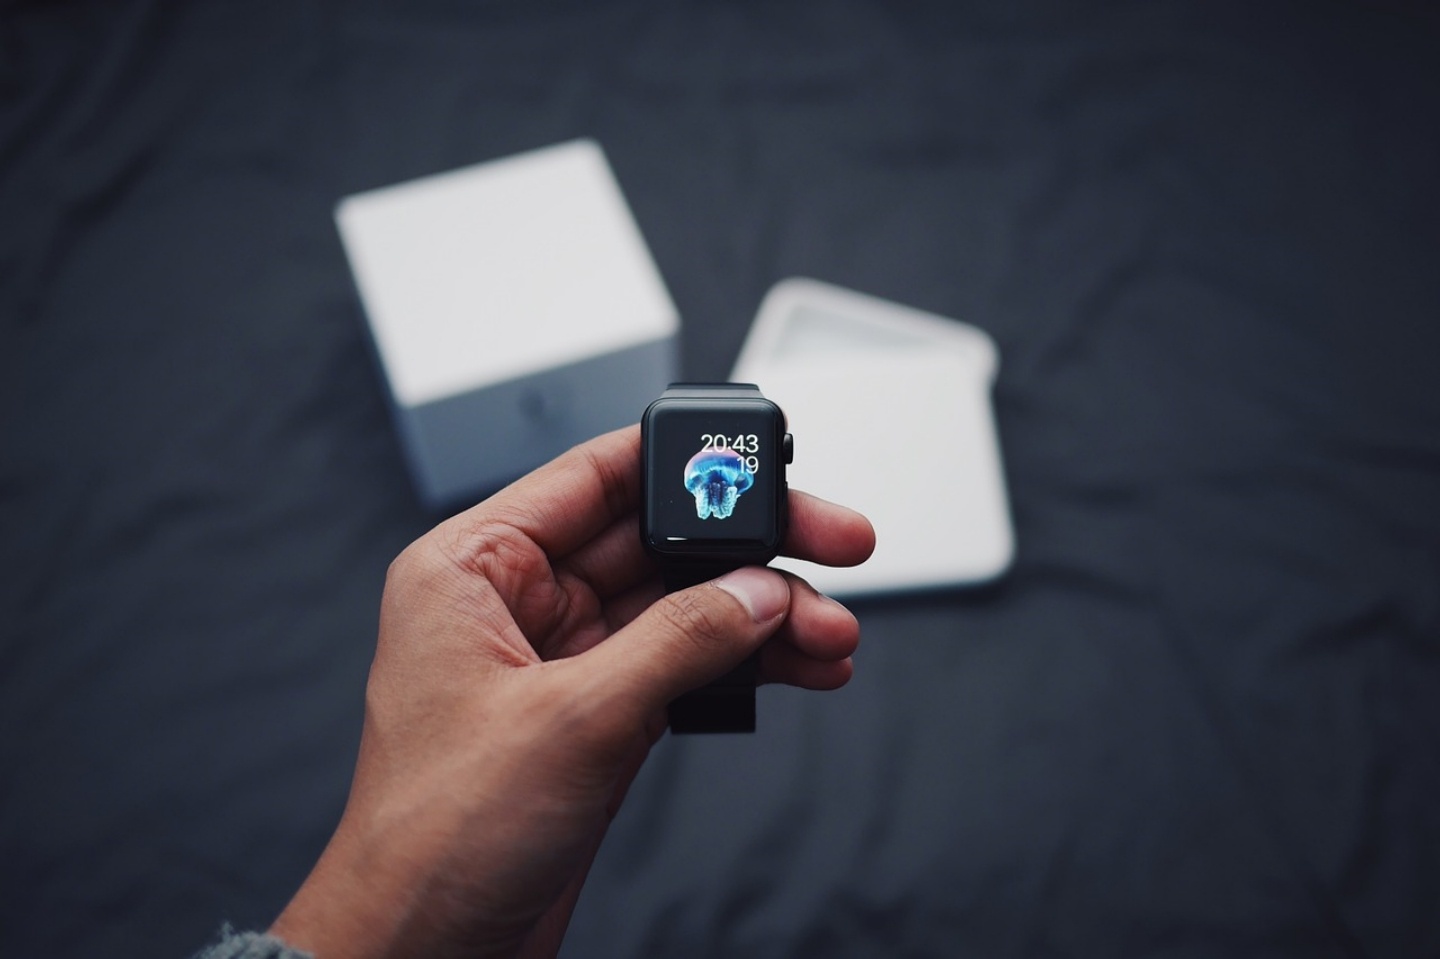 第六代 Apple Watch 功能曝光？搭載 watchOS 7 並可能新增血氧檢測、睡眠監測功能